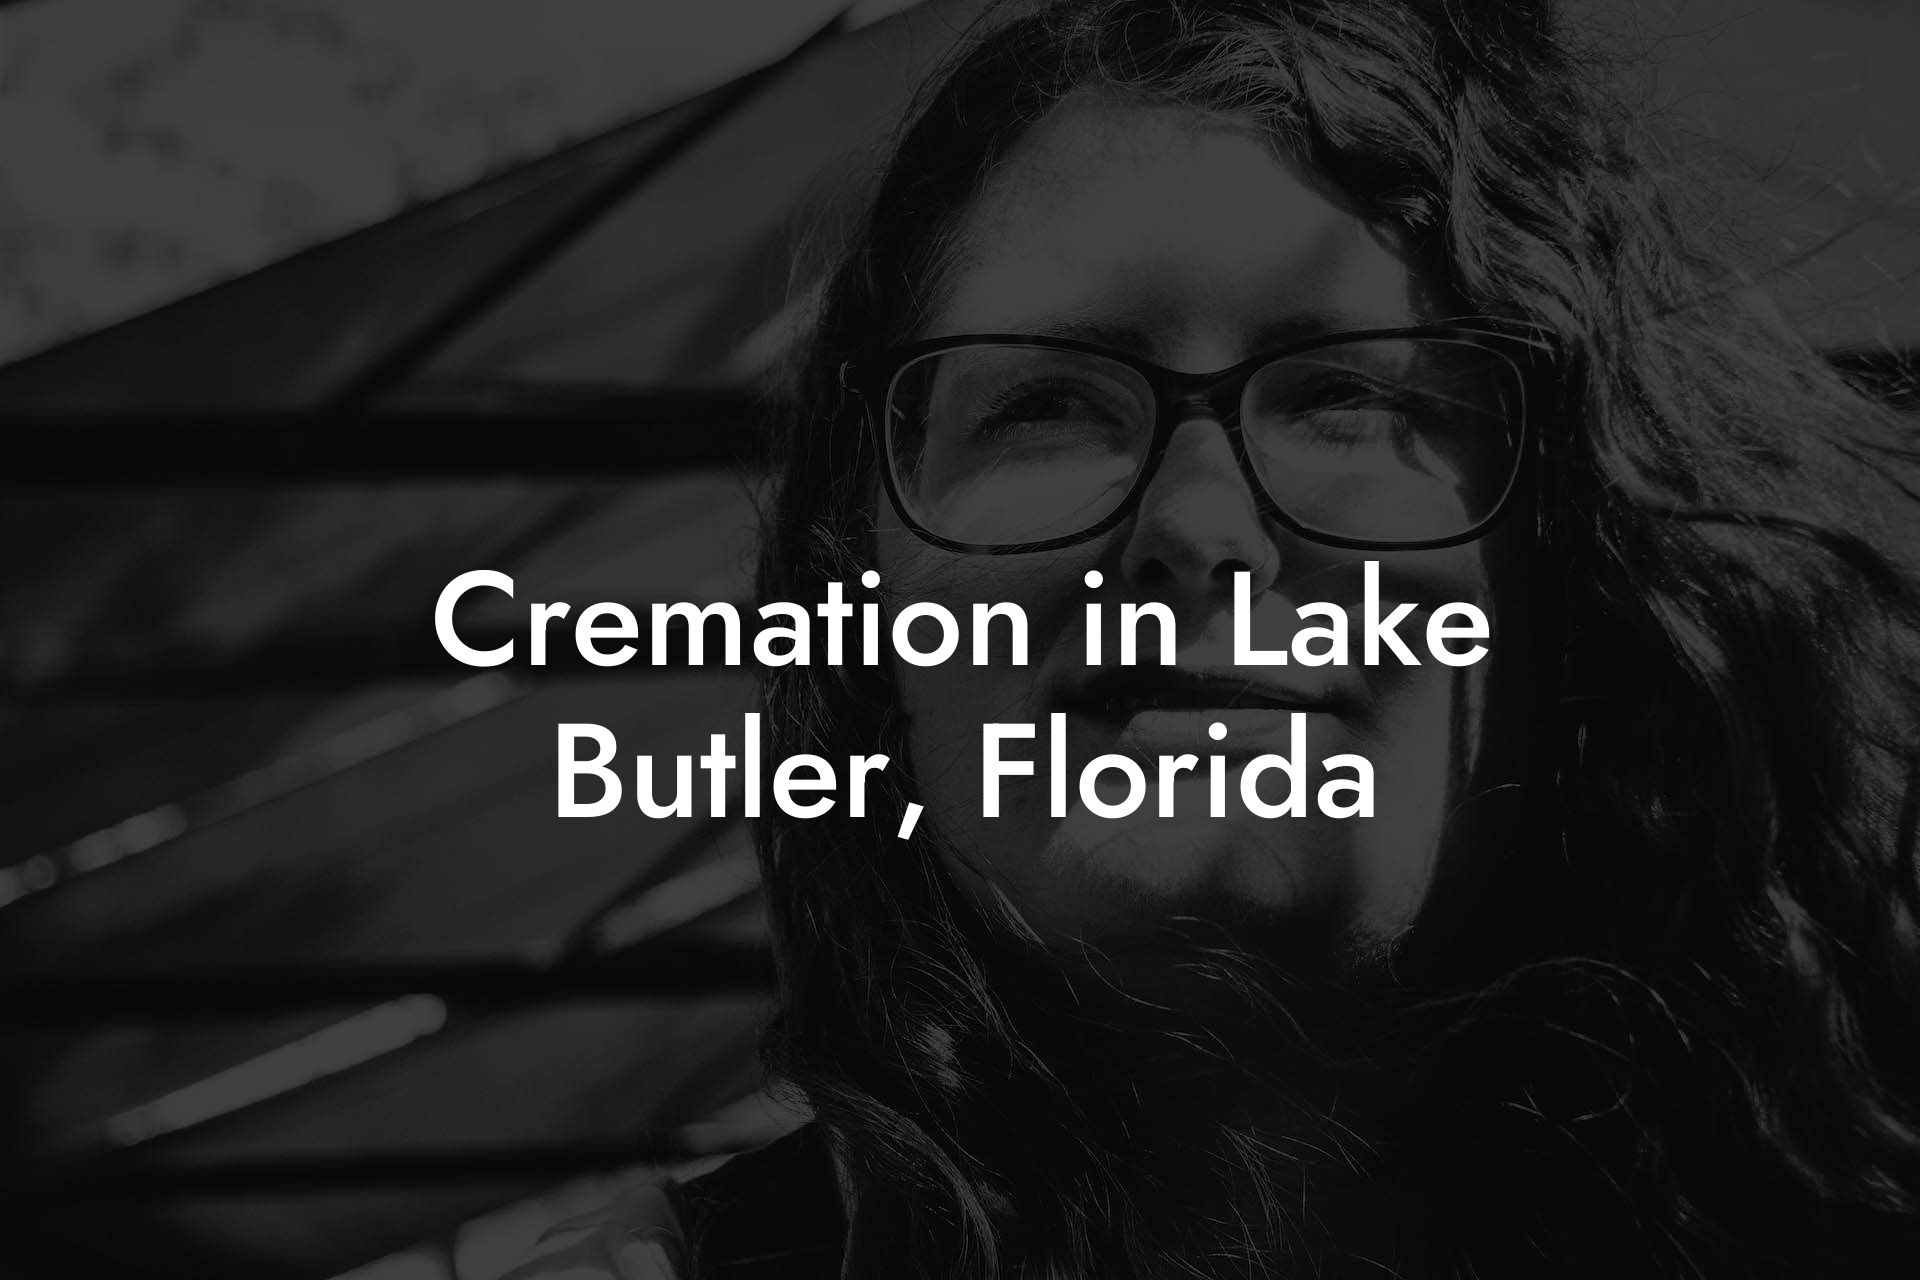 Cremation in Lake Butler, Florida